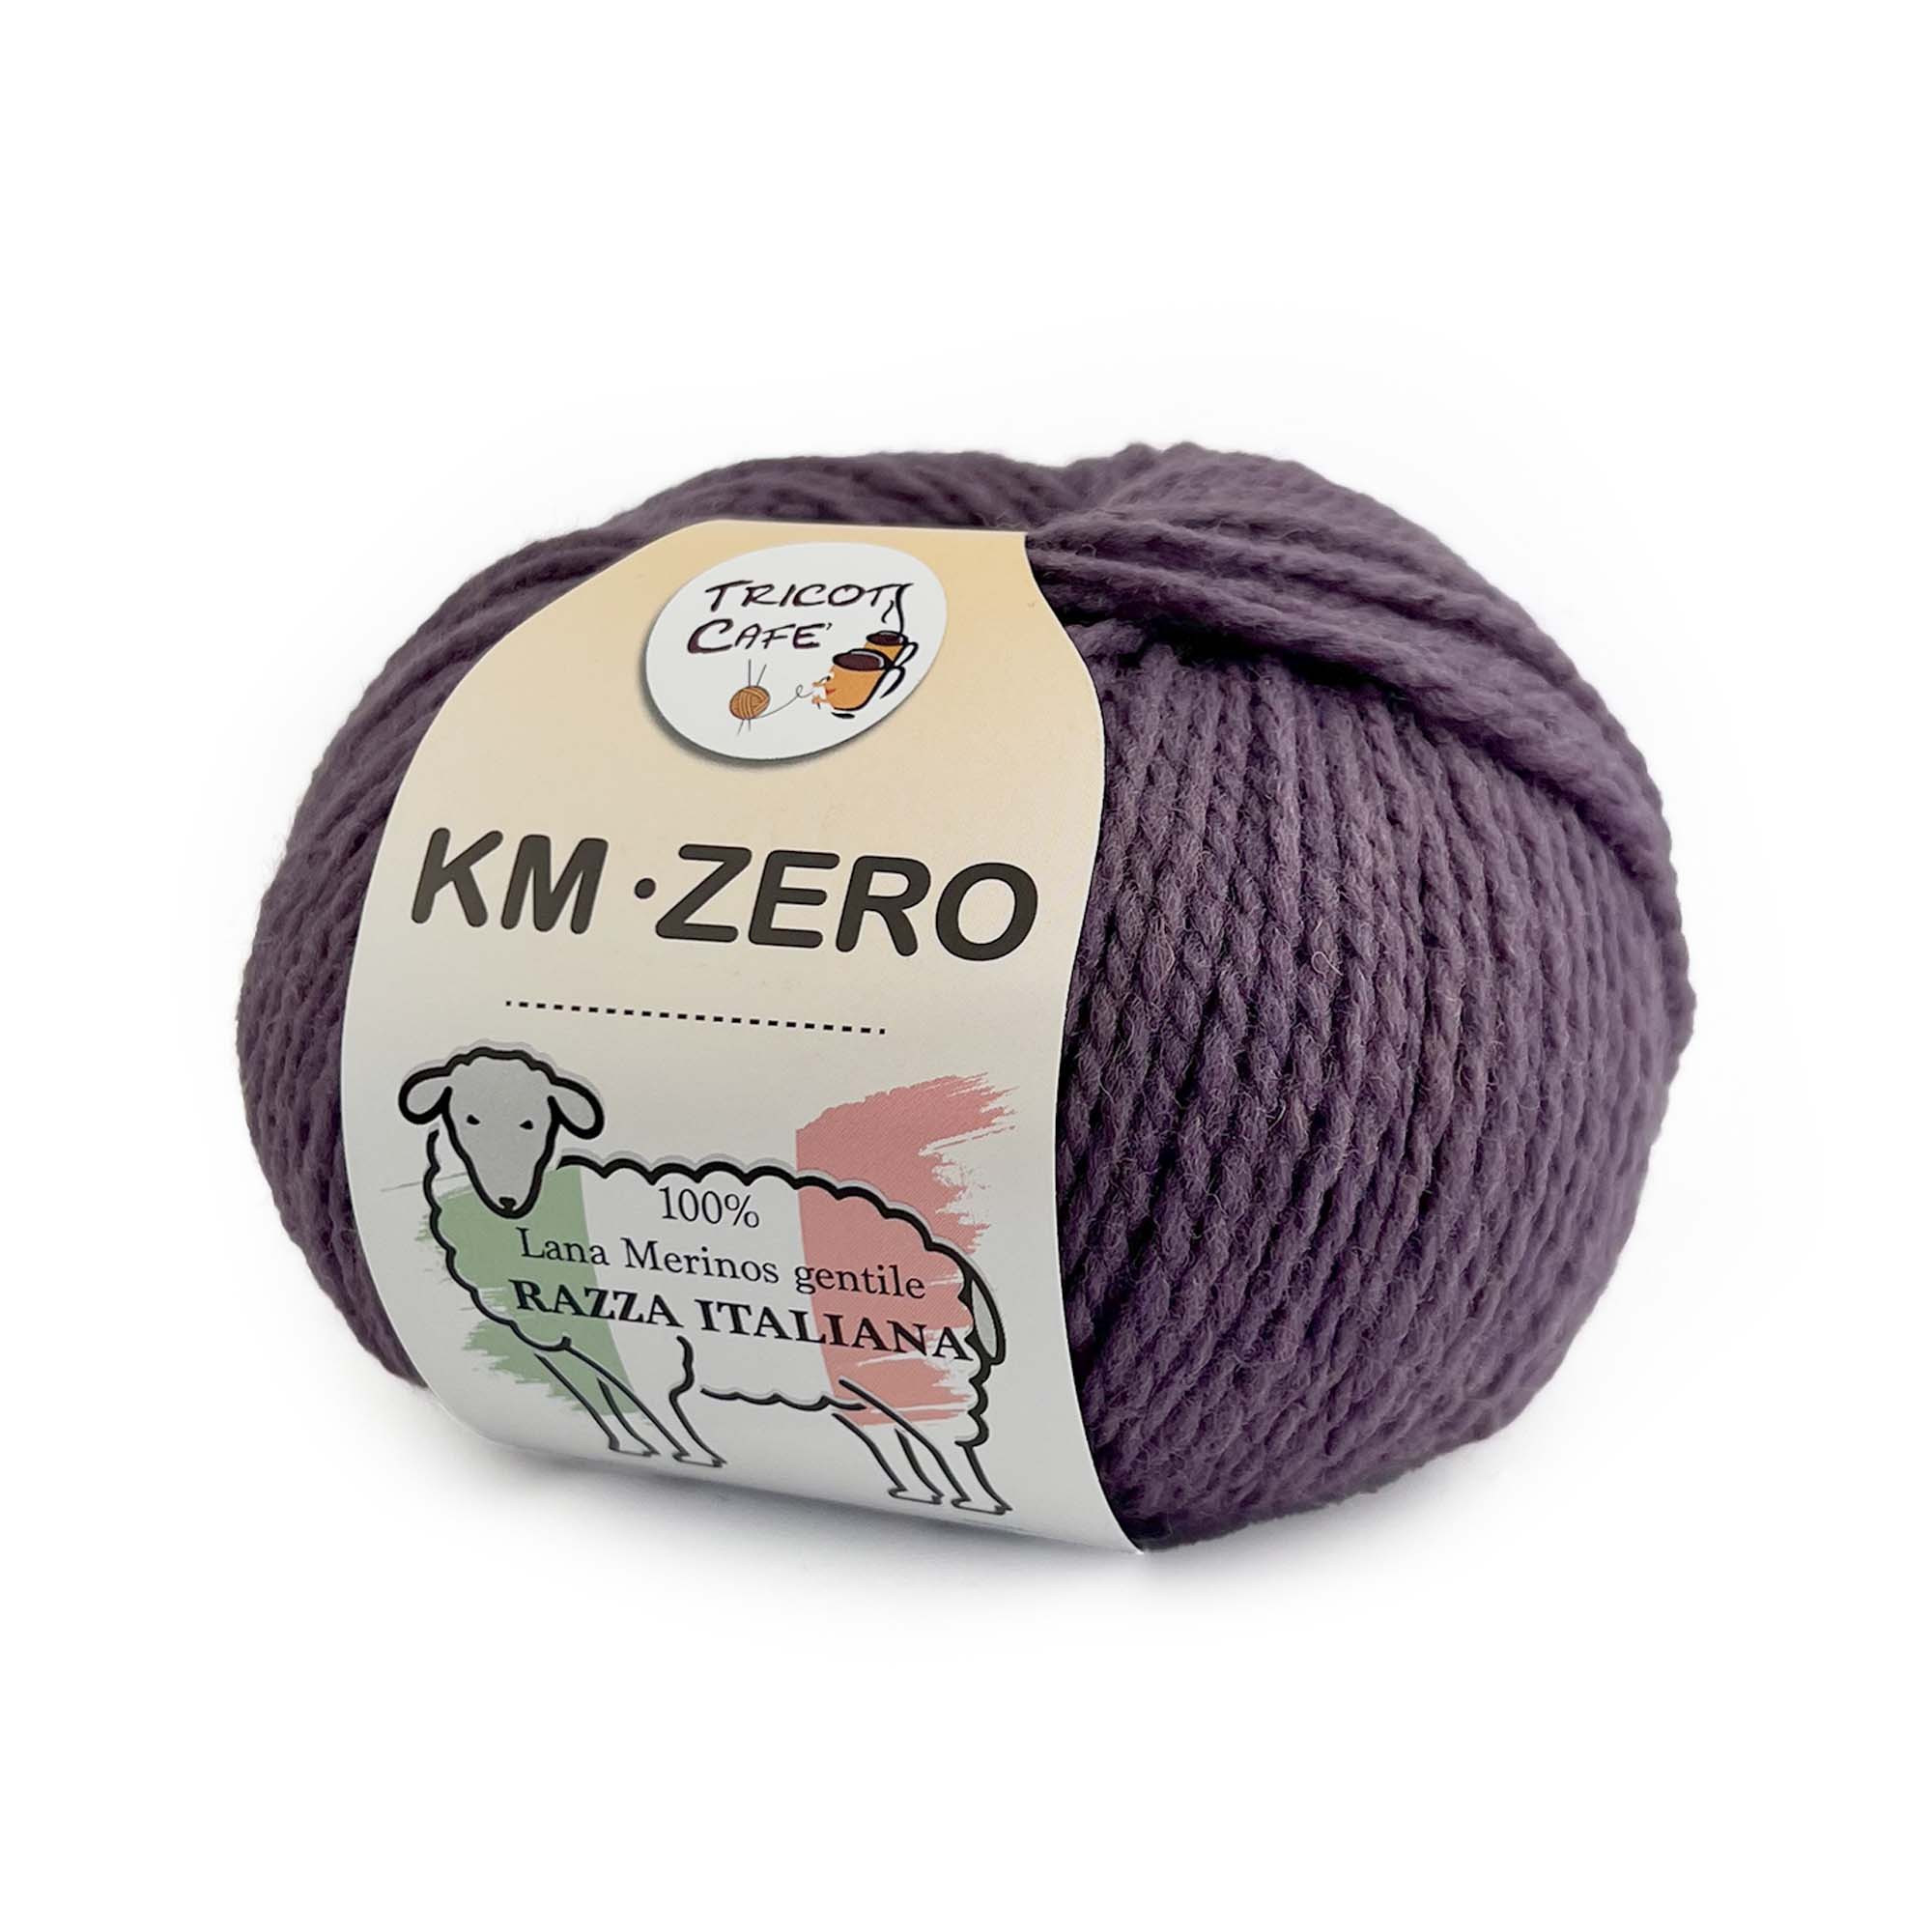 Km. Zero - Filato pura lana merinos gentile